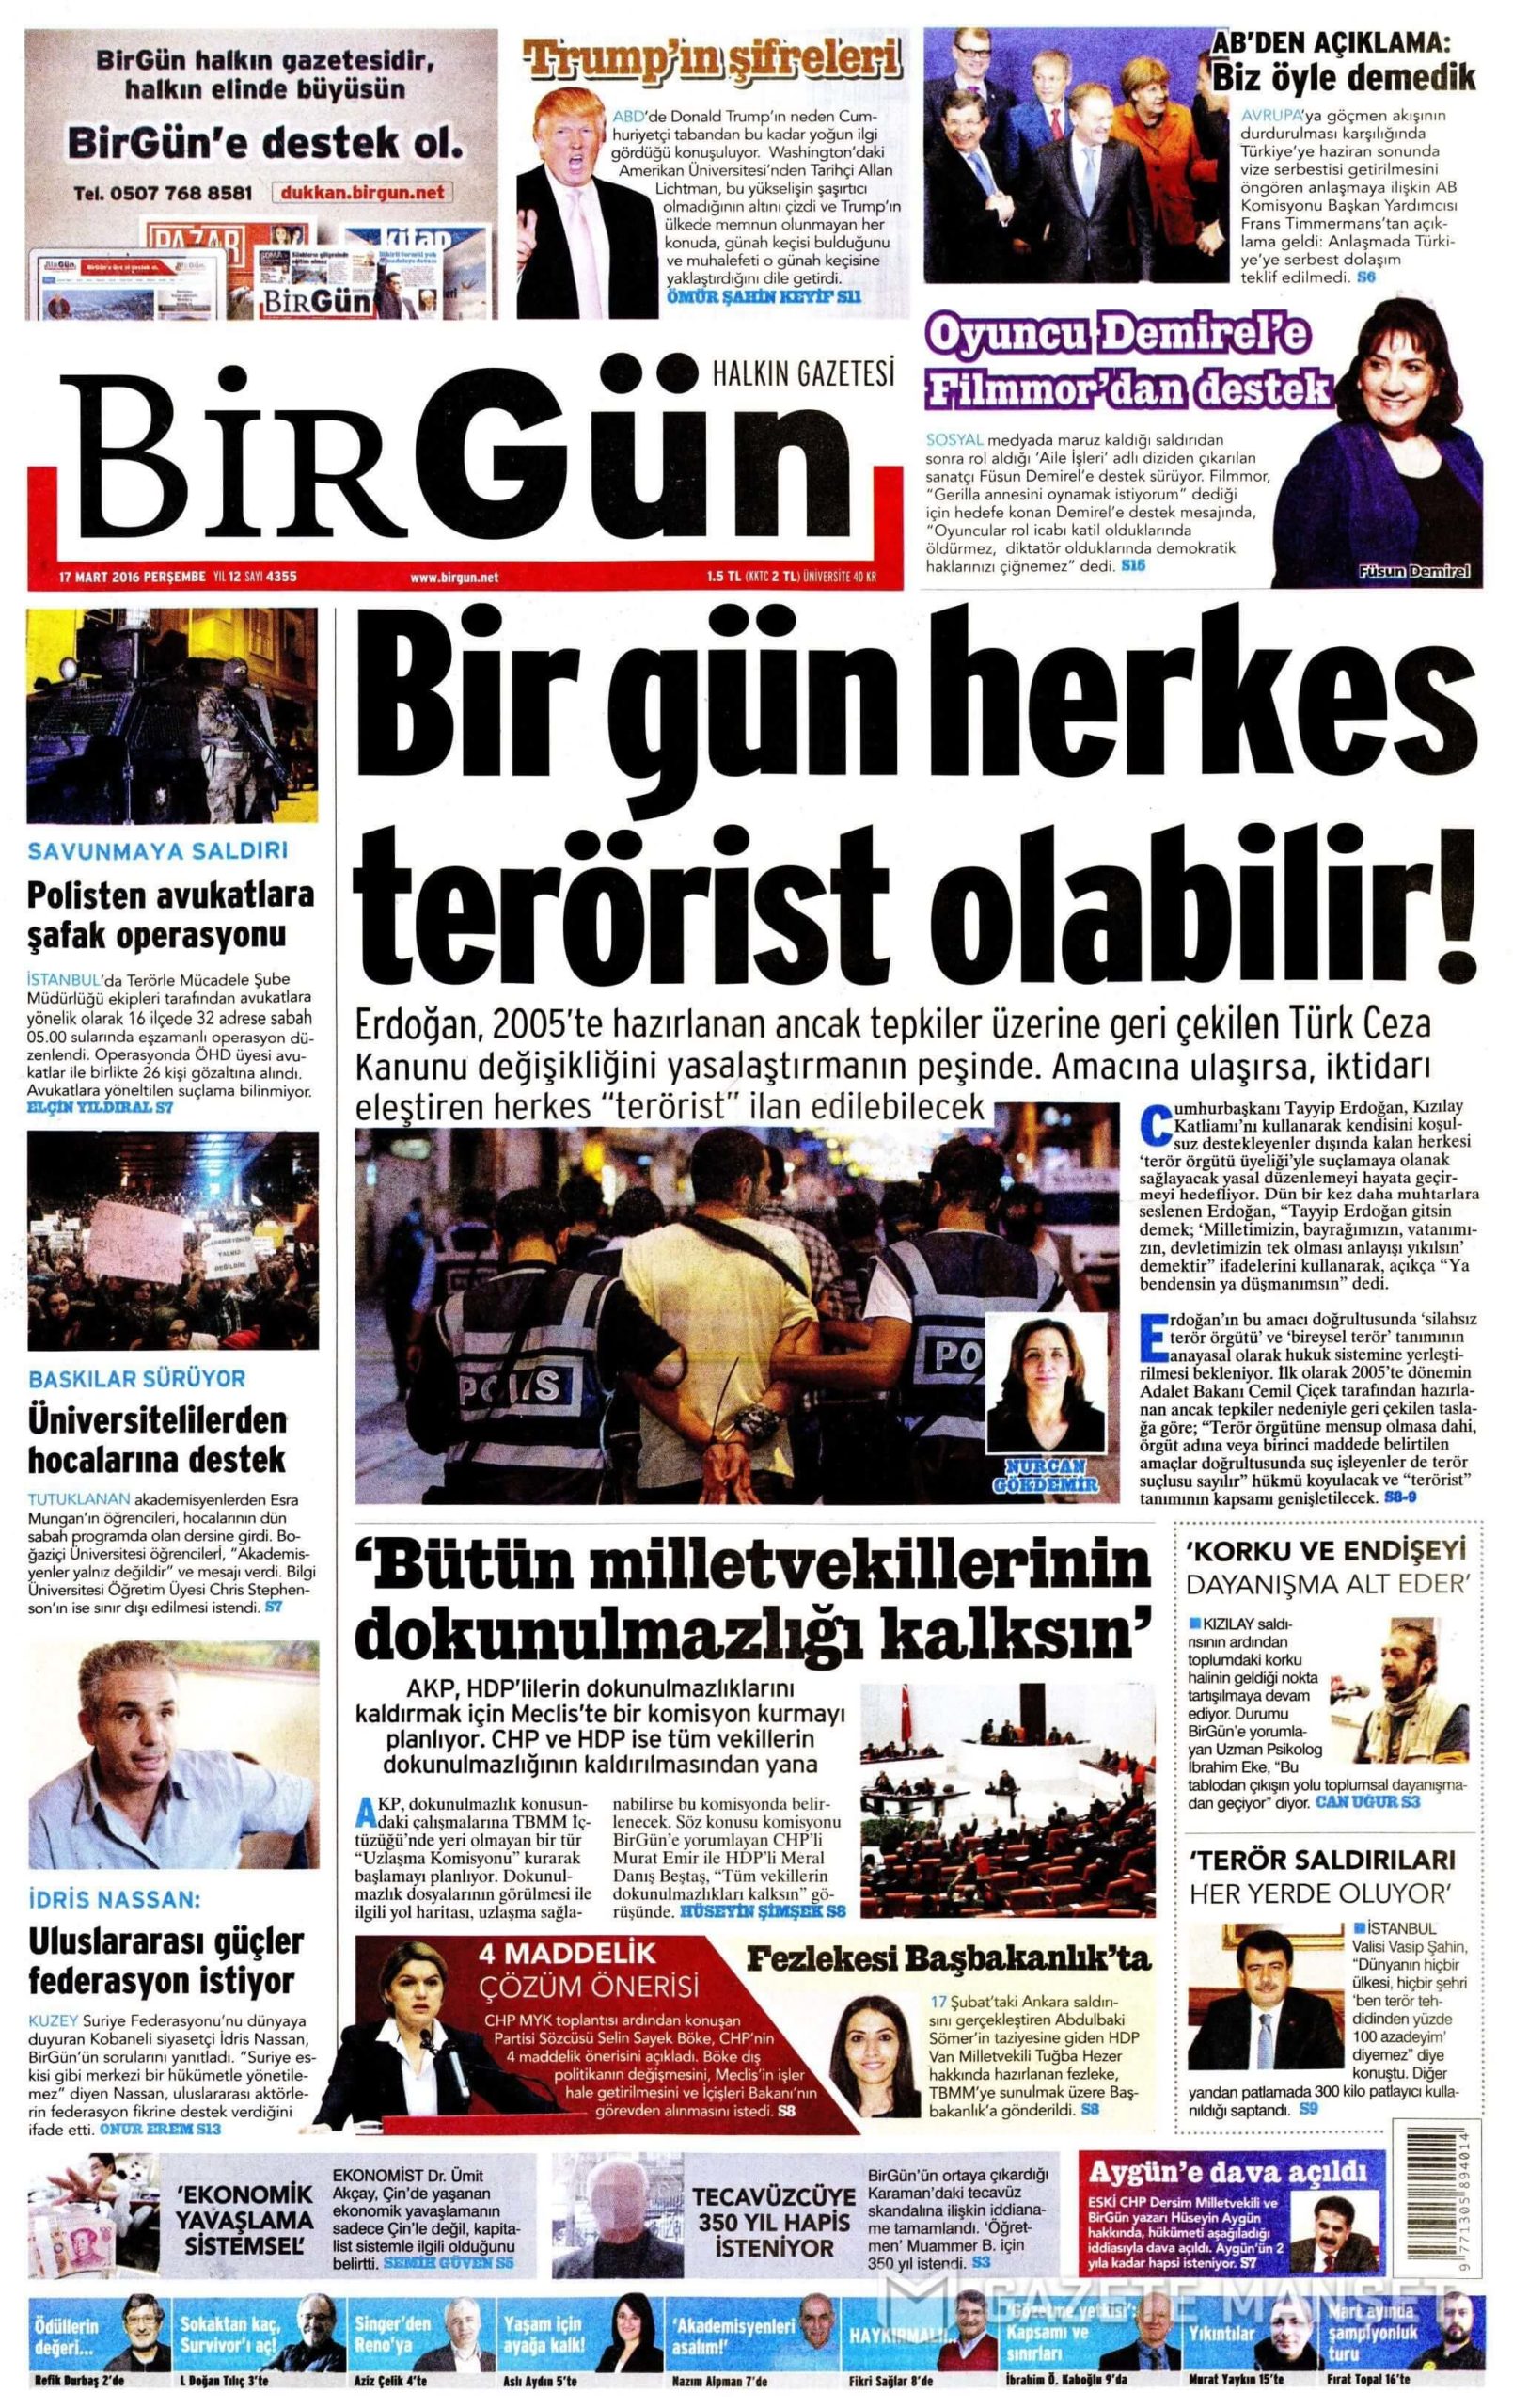 Turkish Newspapers 22 BirGun scaled